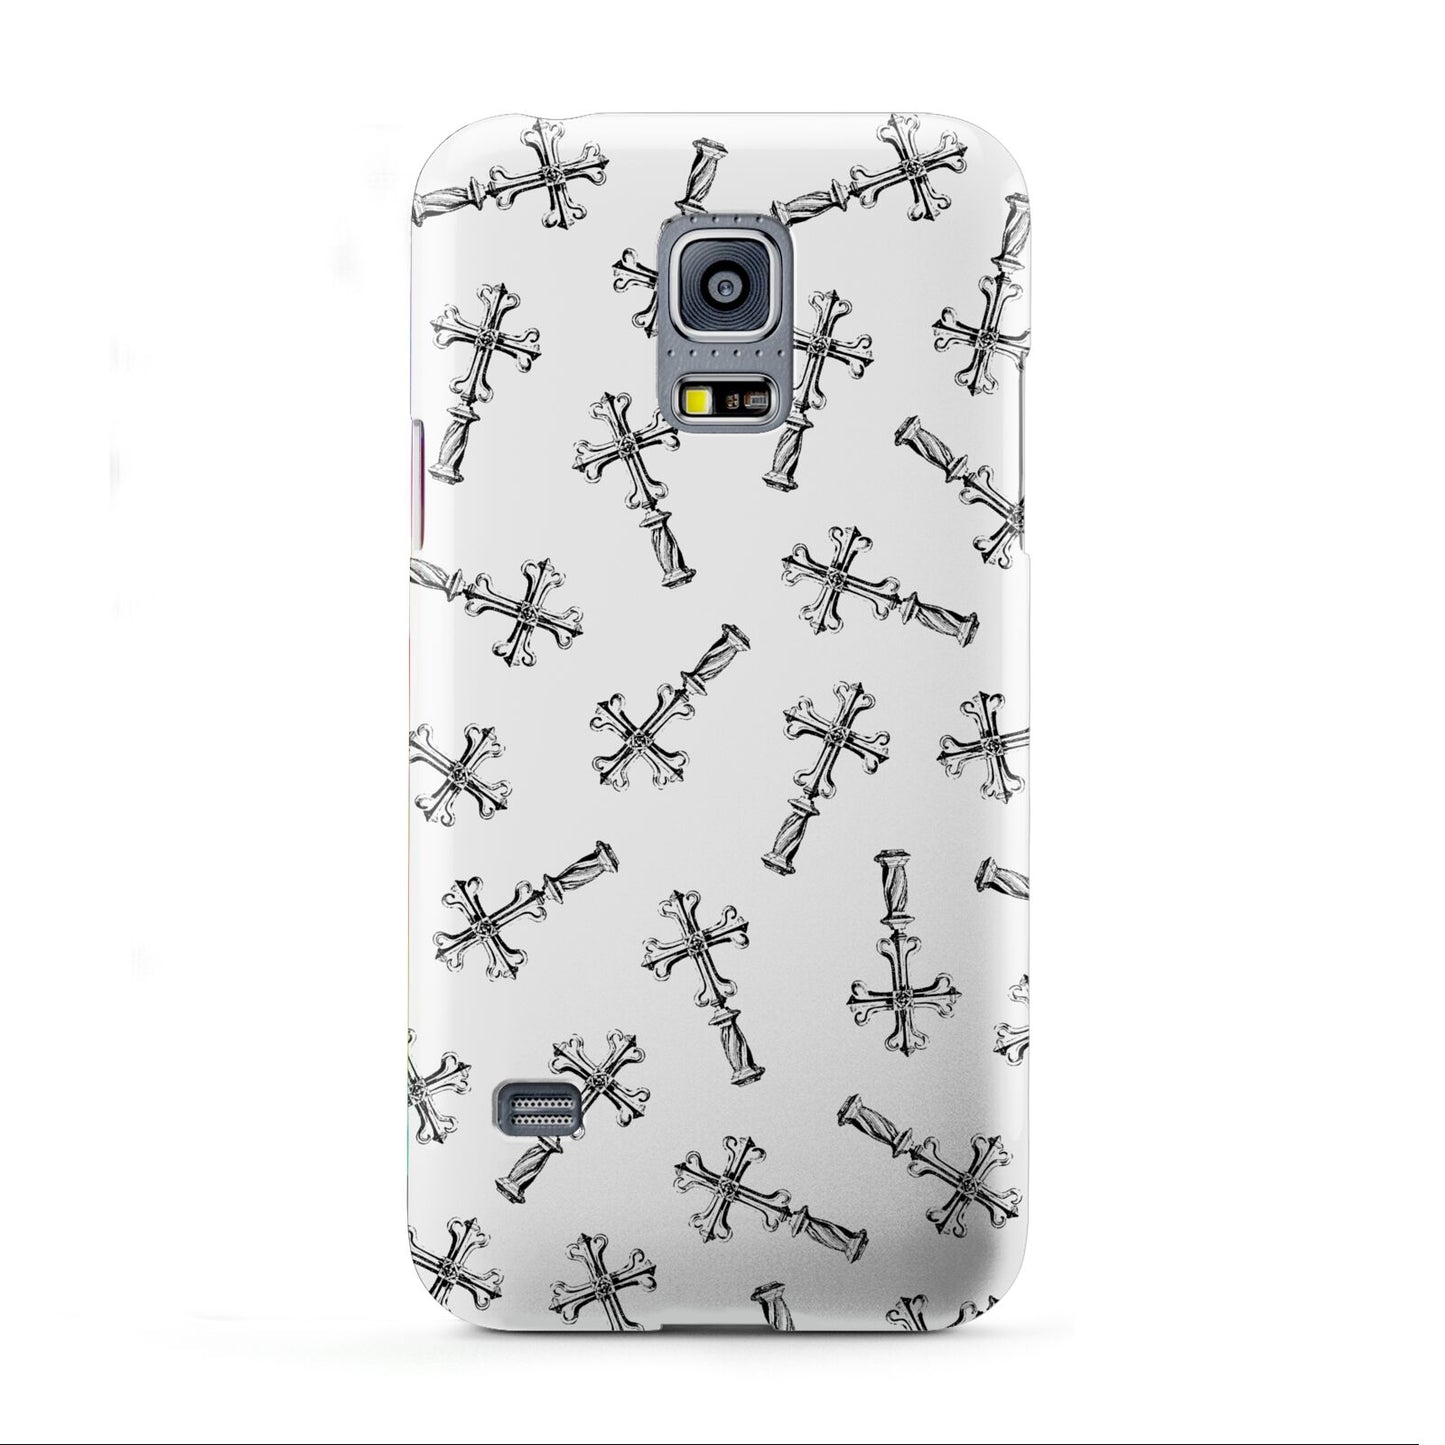 Monochrome Crosses Samsung Galaxy S5 Mini Case